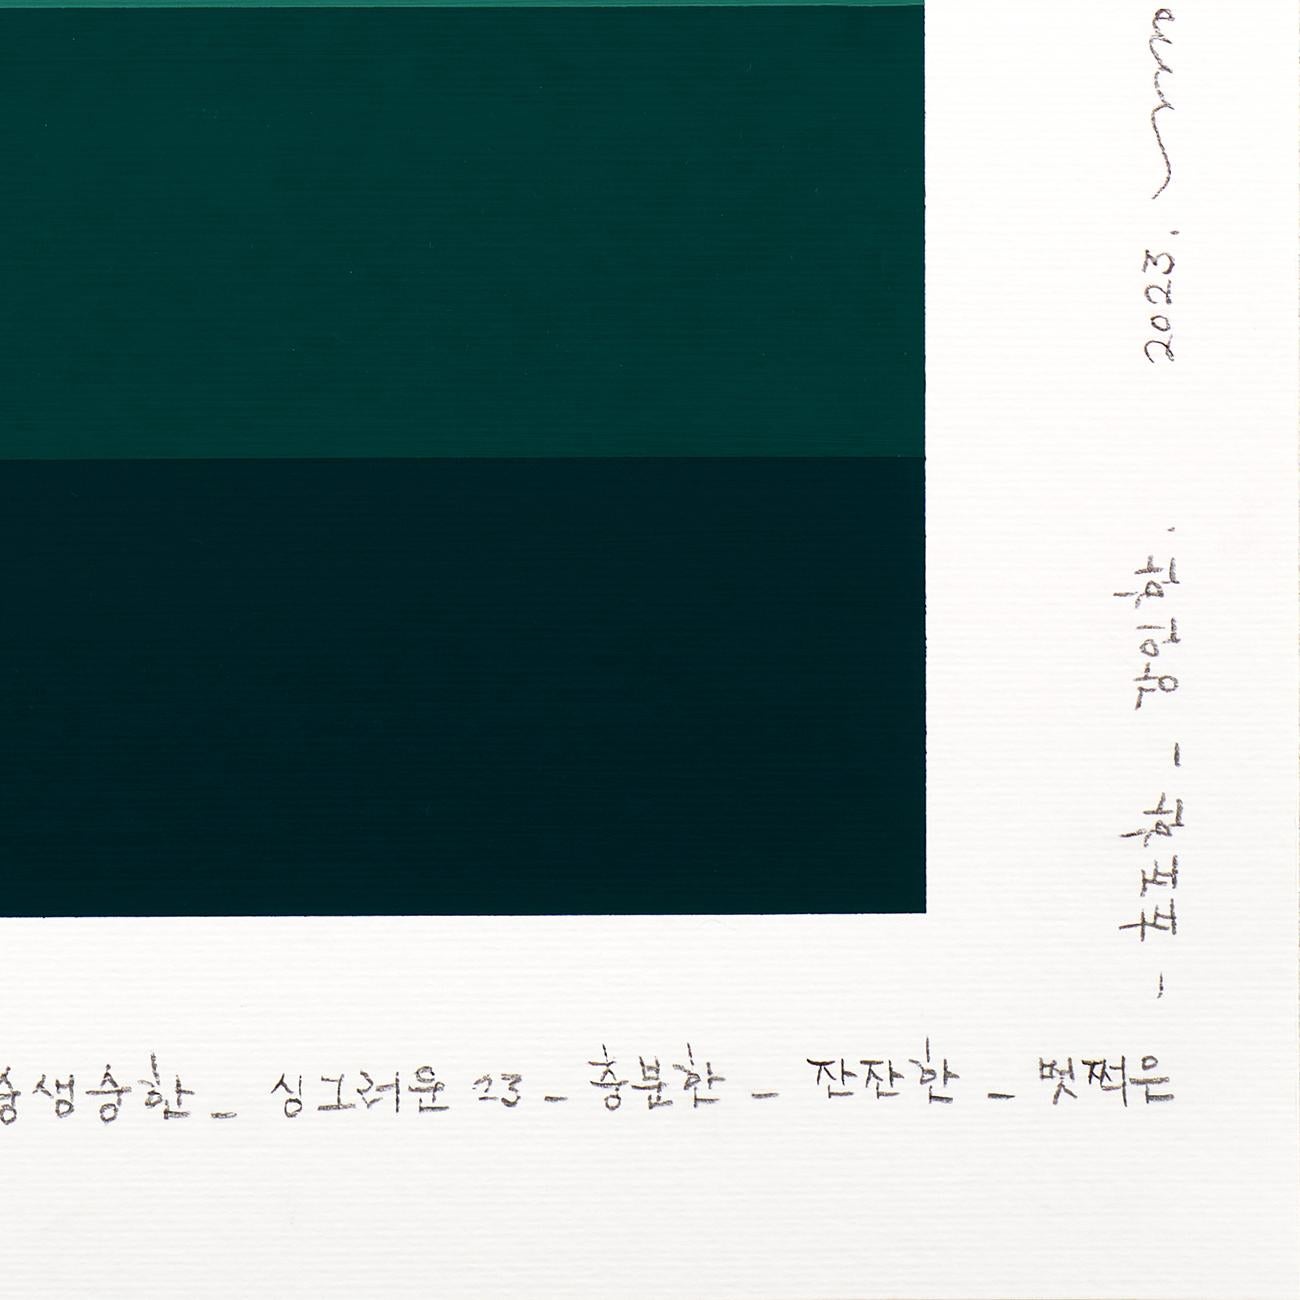 Emotionale Farbtafel 184 (Abstrakte Malerei)
Bleistift und Acryl auf Fabriano-Pittura-Papier - Ungerahmt.

Diese 2016 begonnene Serie vermittelt eine farbige und emotionale Sprache und ist inspiriert von der Serie Color as Adjective, einer Reihe von